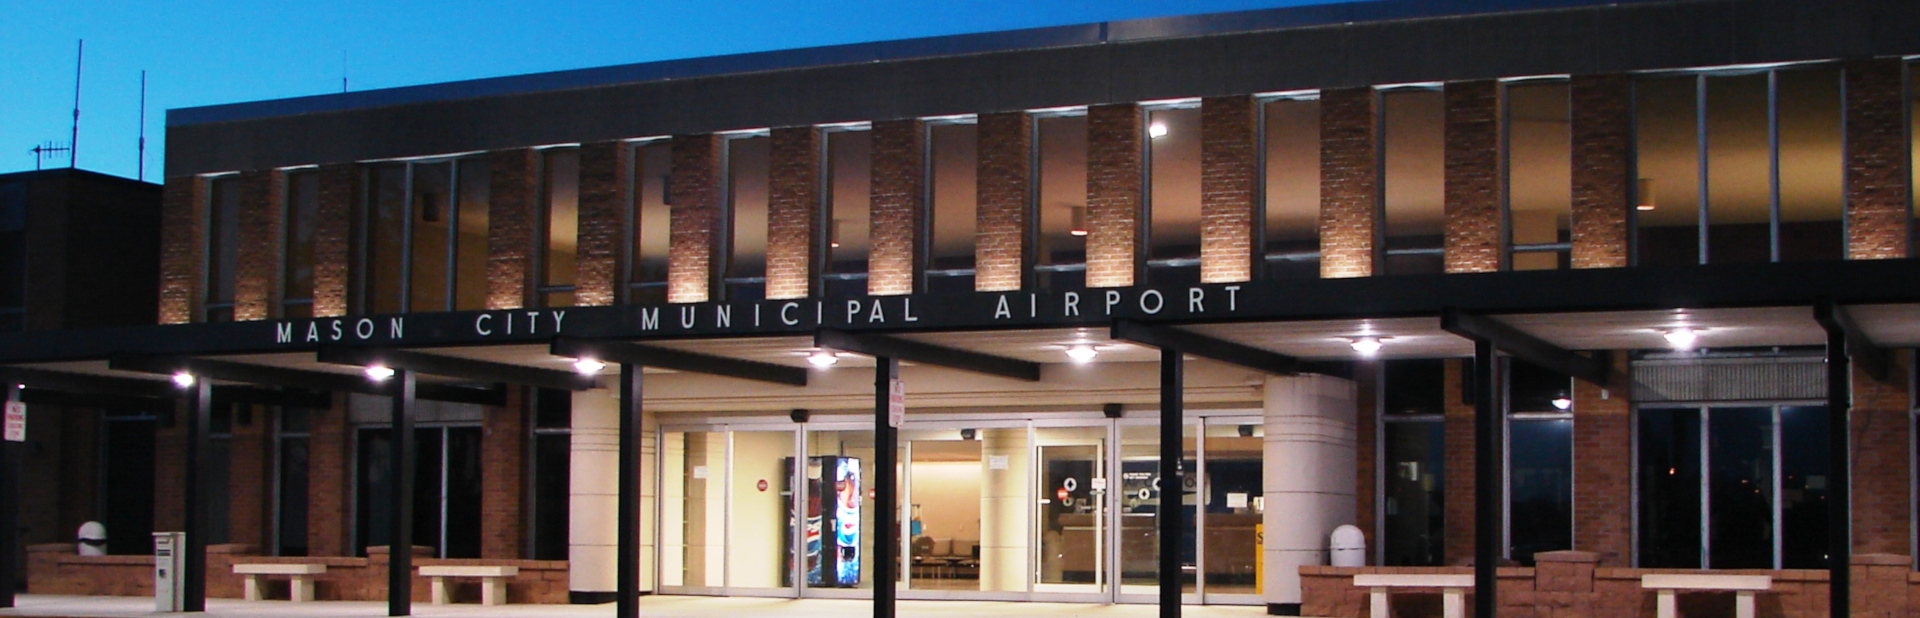 Mason City Municipal Airport Airport lat long